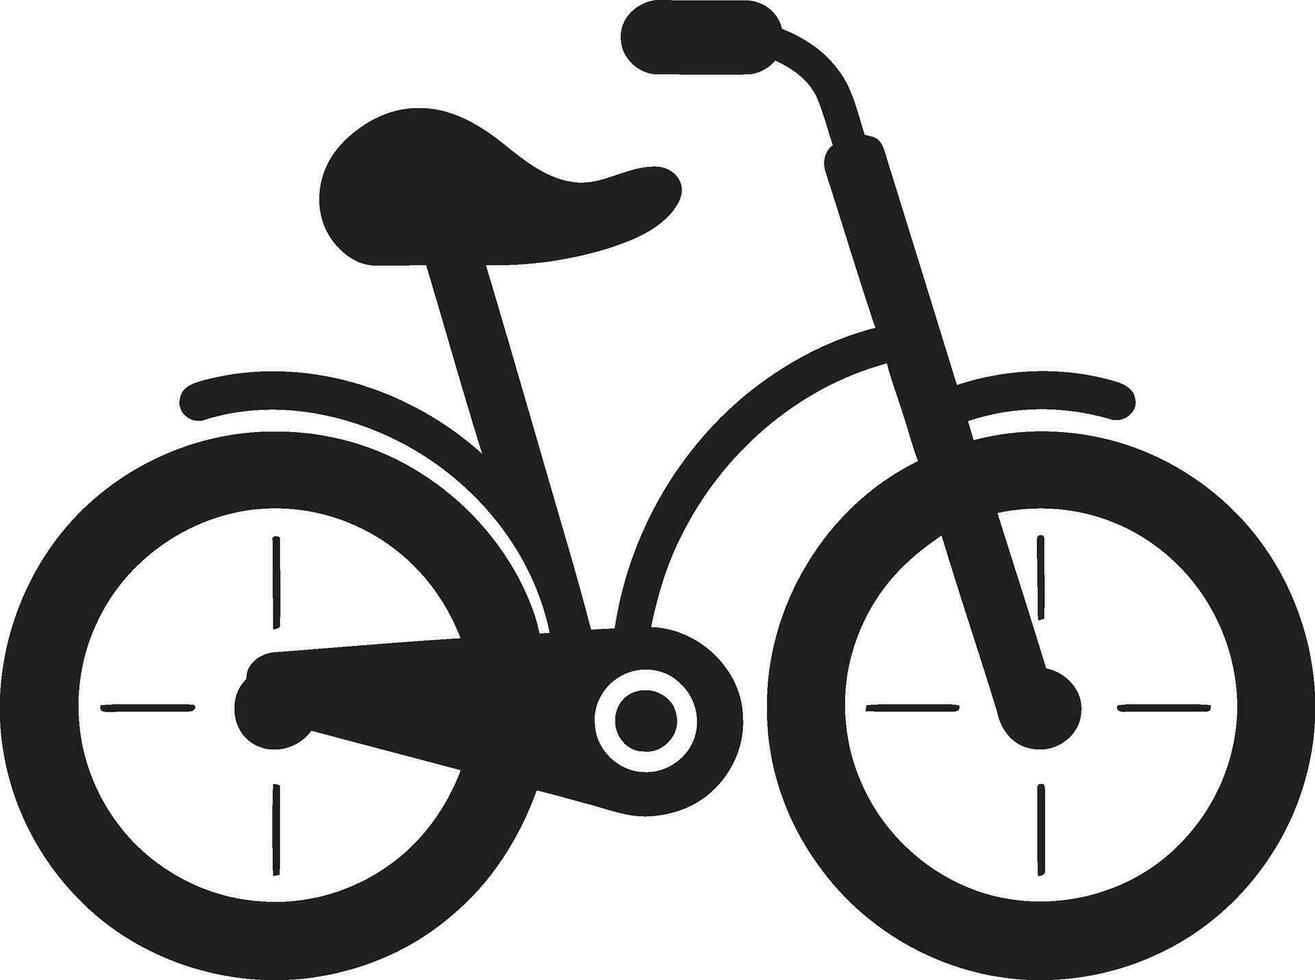 verkennen de stadsgezicht fiets vector artwork gevectoriseerd fietsen de kunst van beweging